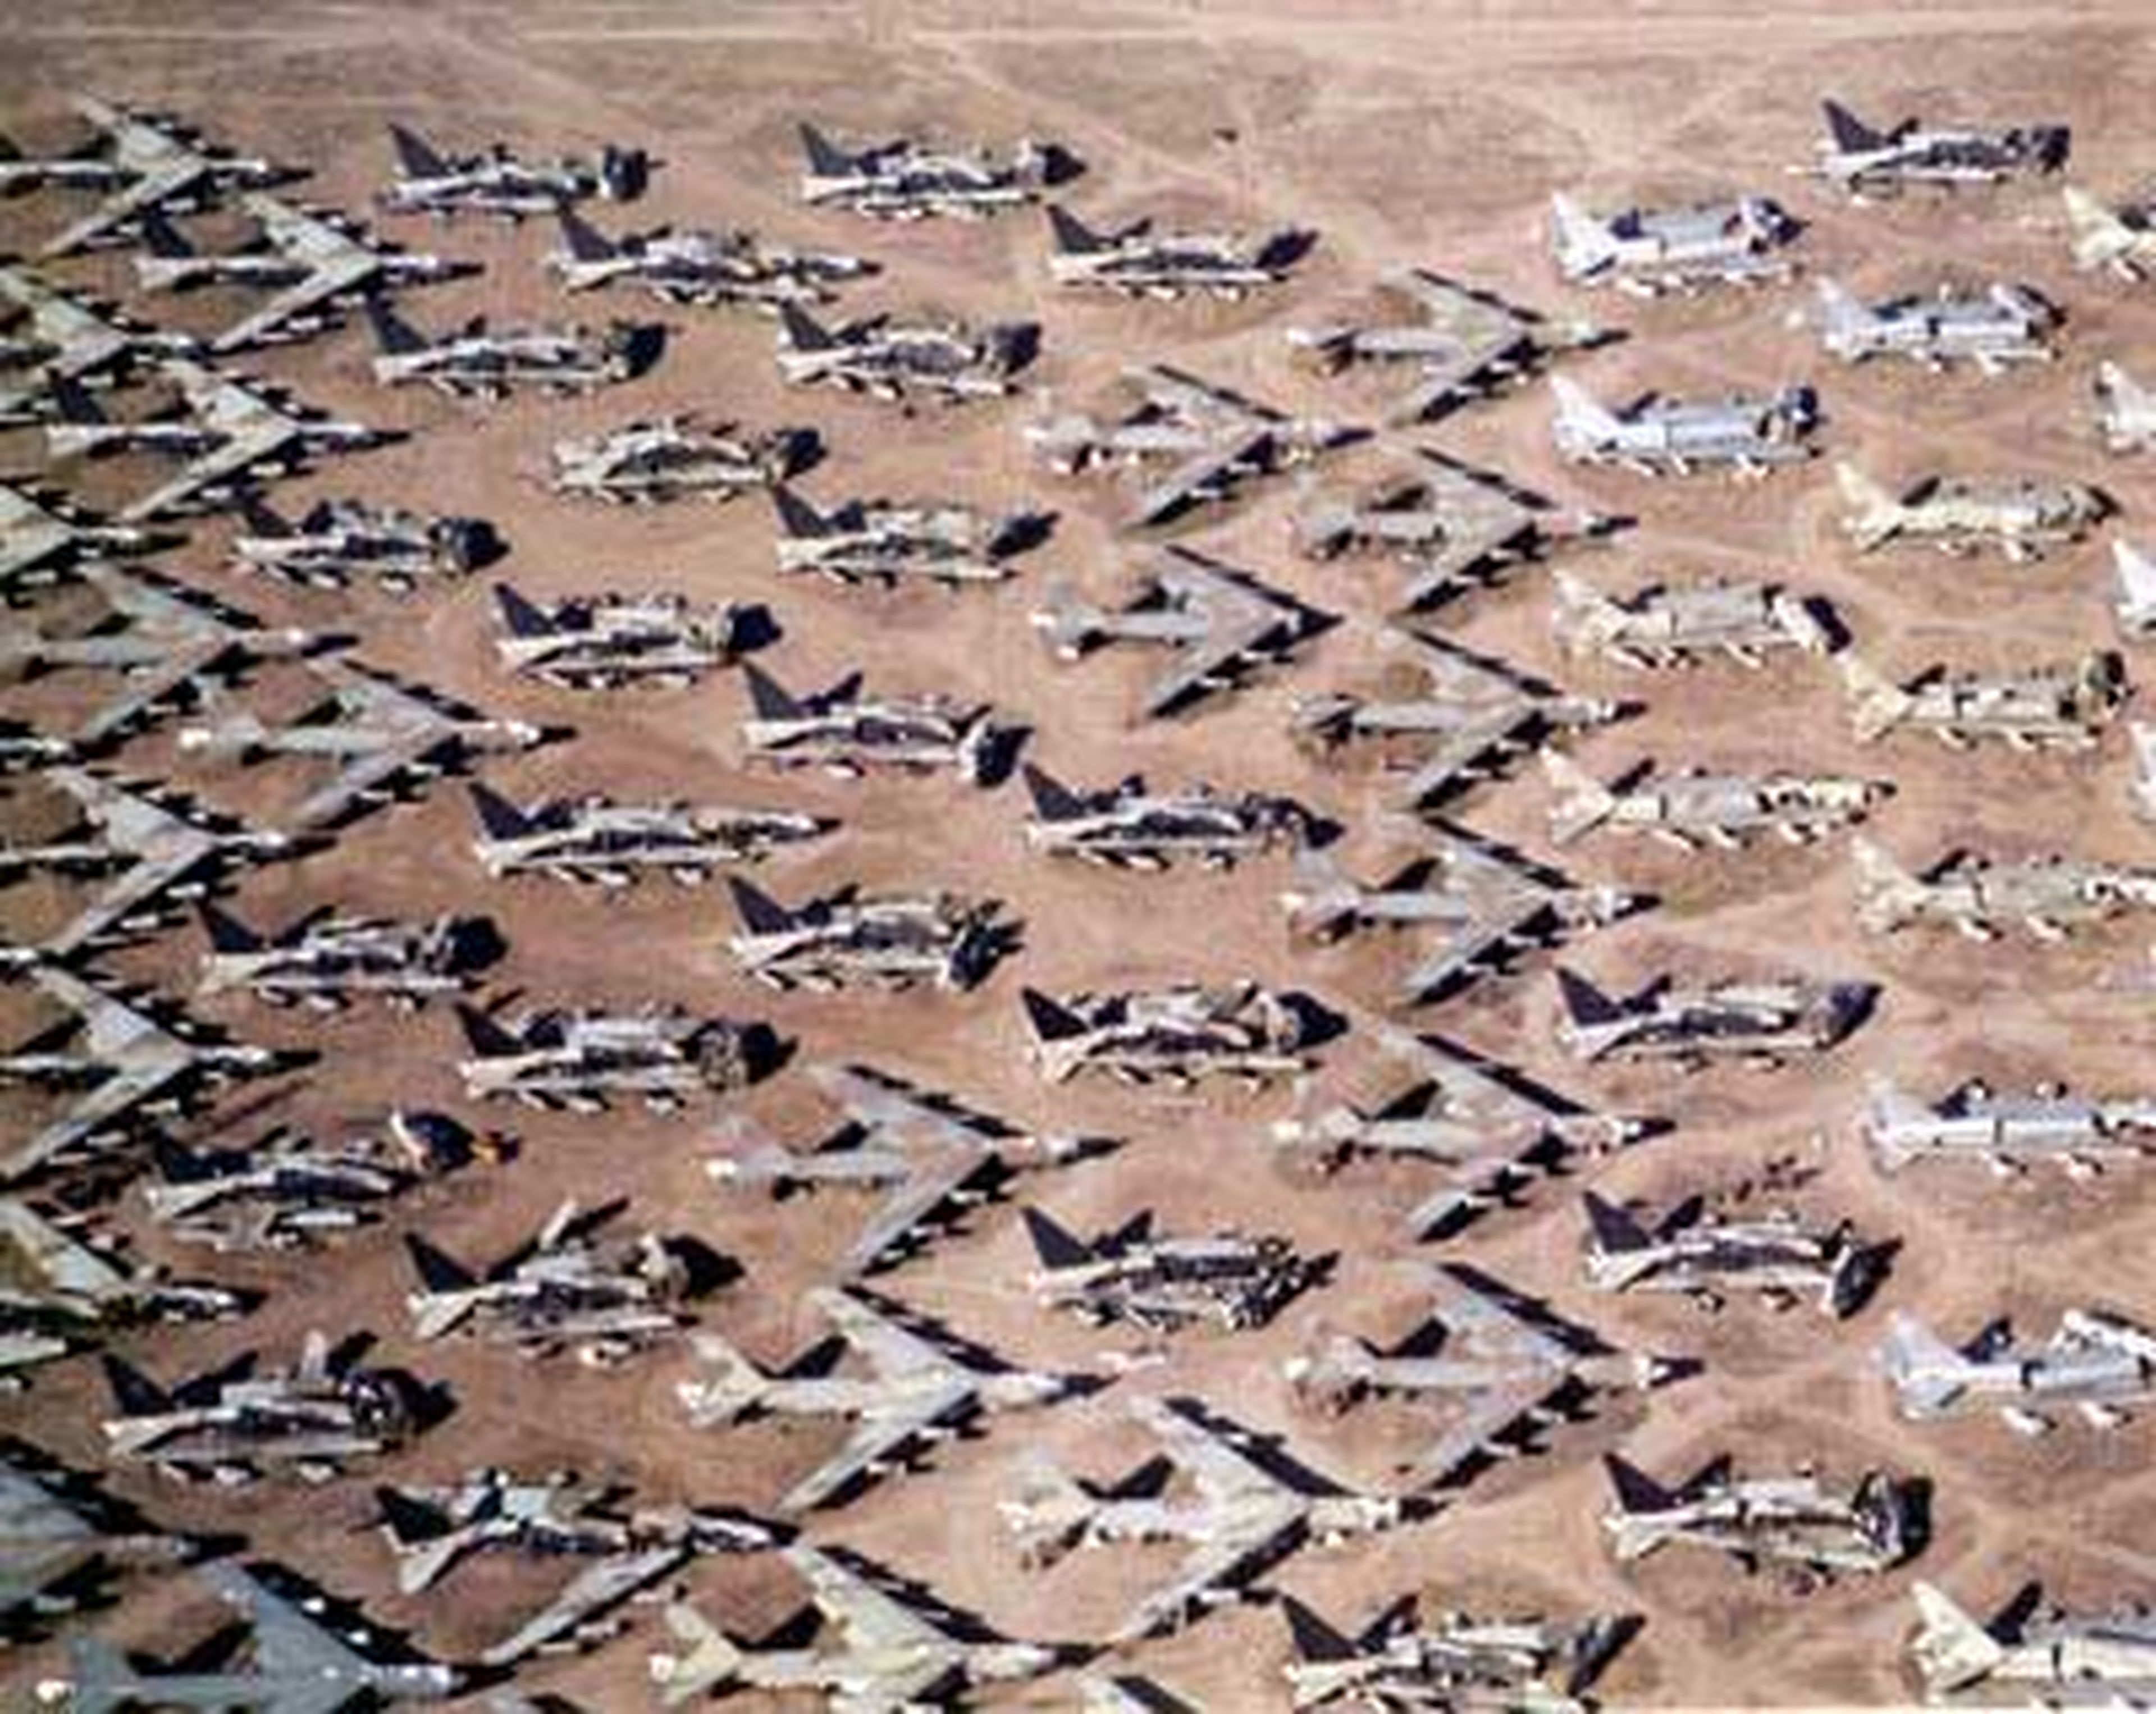 Cementerio de aviones